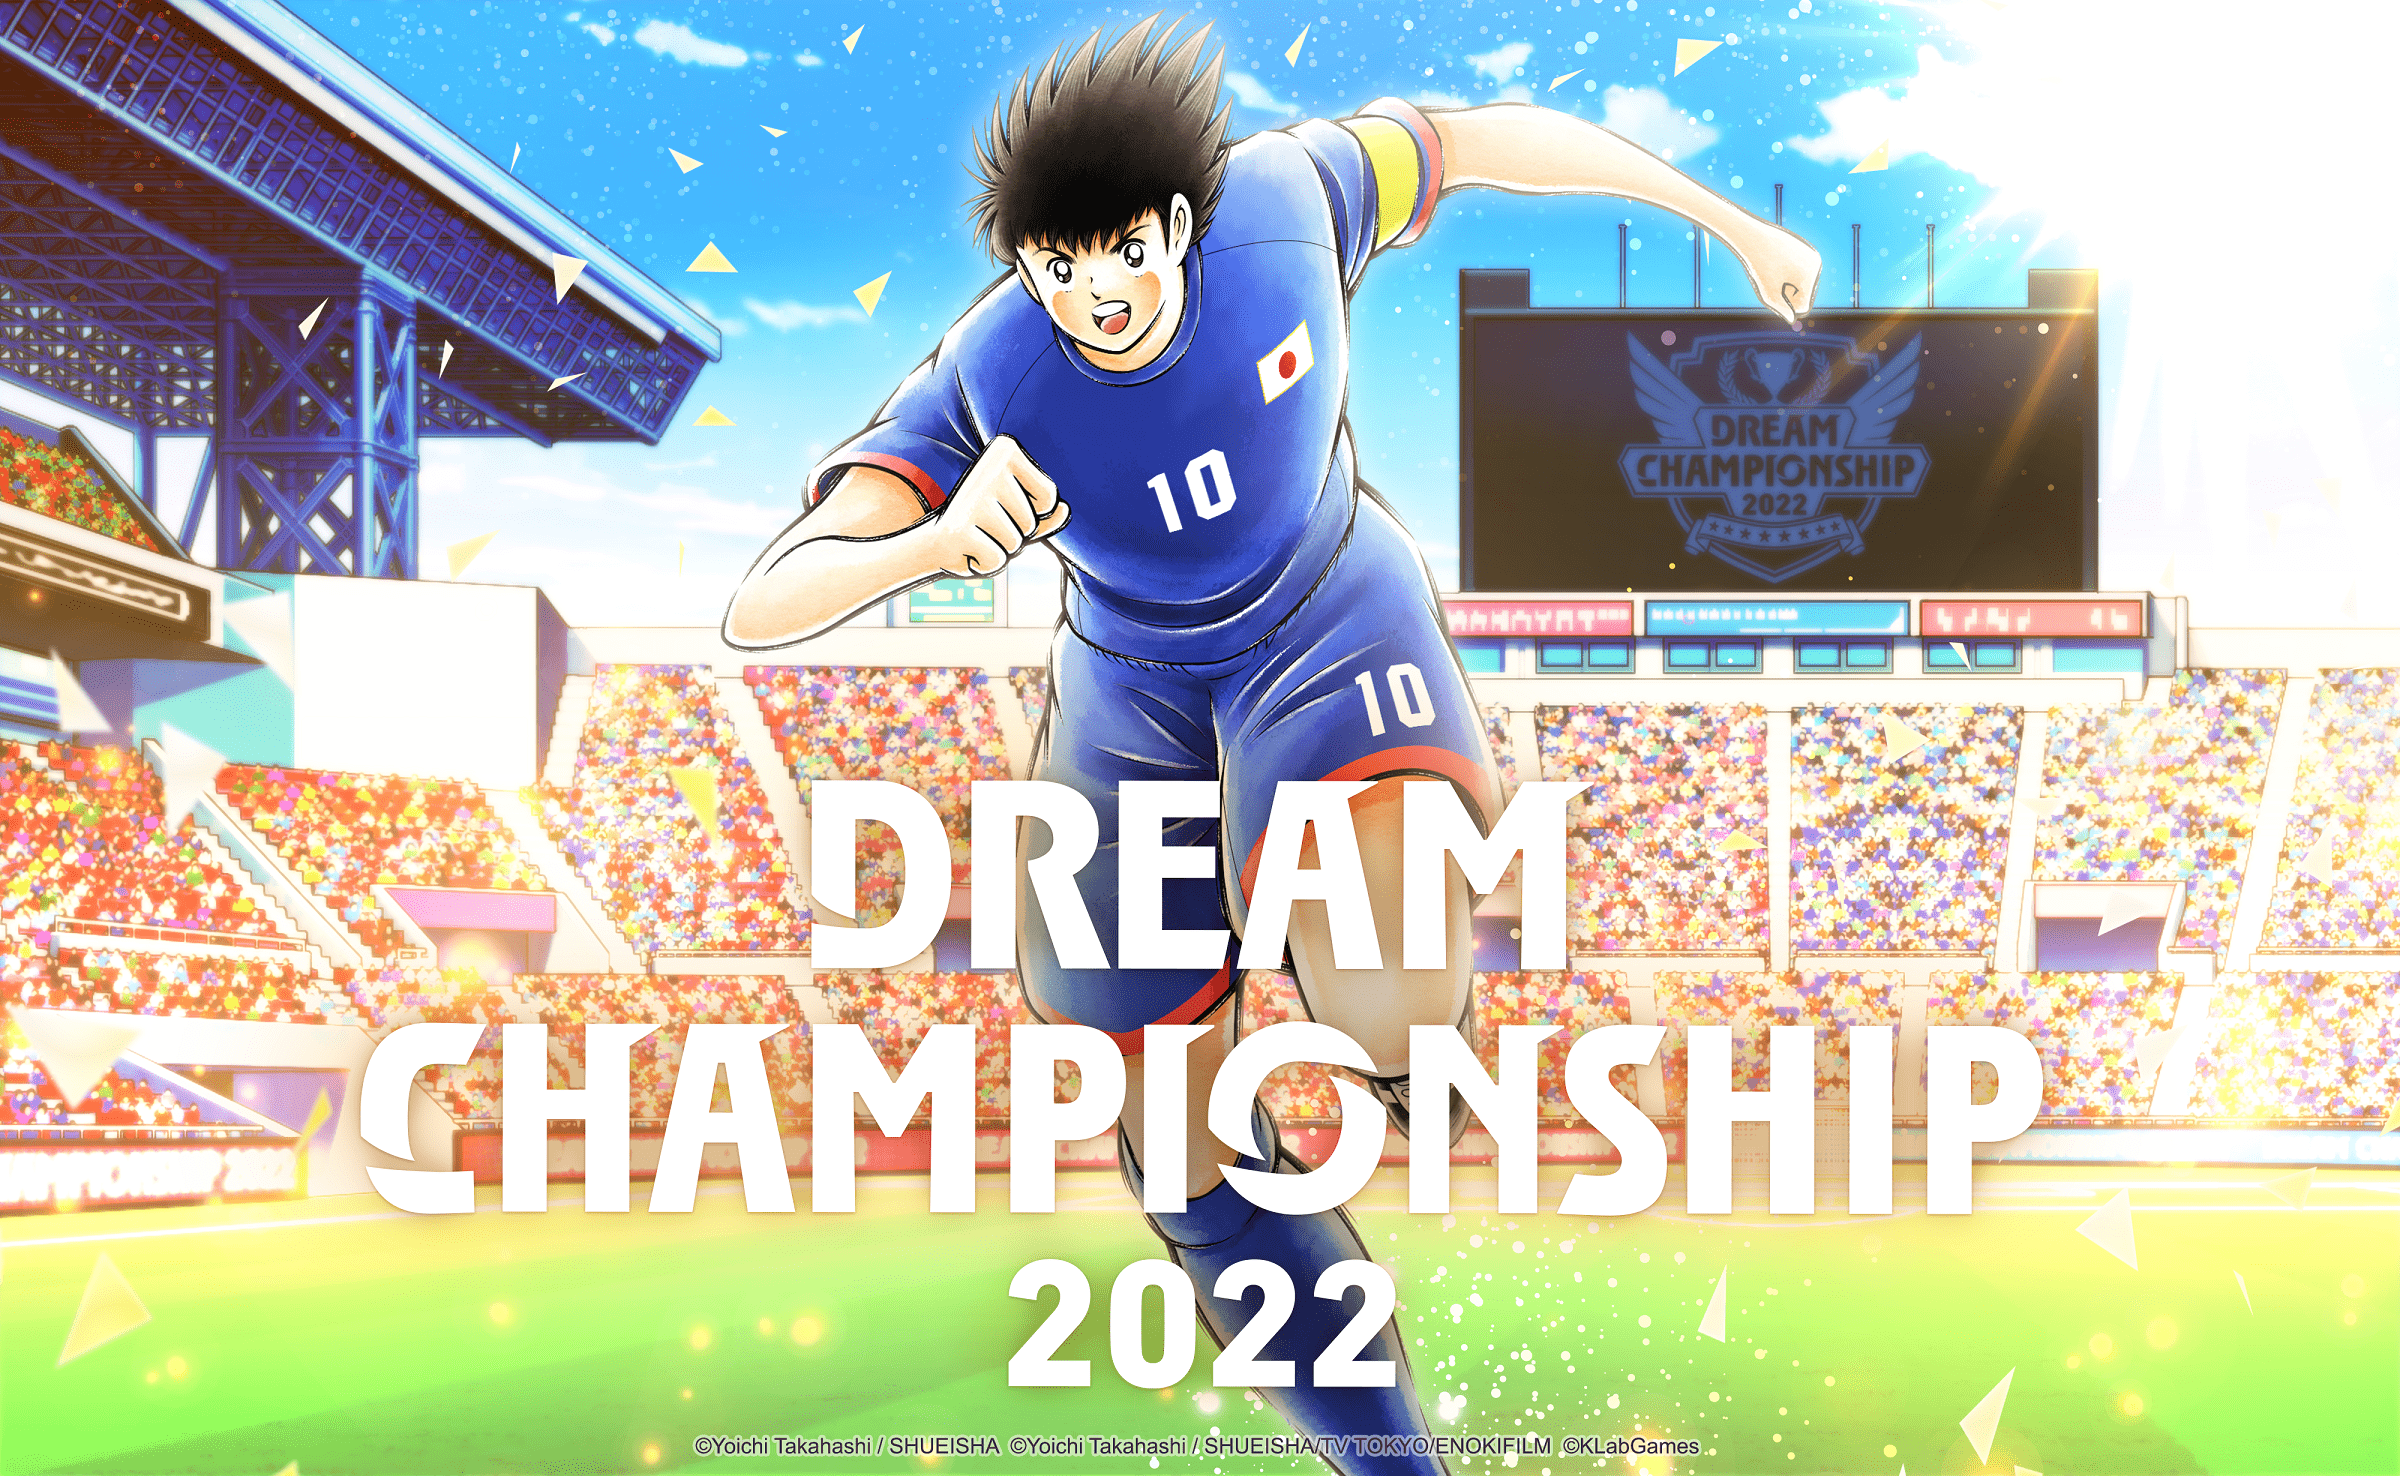 【大会情報】Dream Championship 最終地域予選大会 ヨーロッパ・アフリカブロック【2022年10月15日】